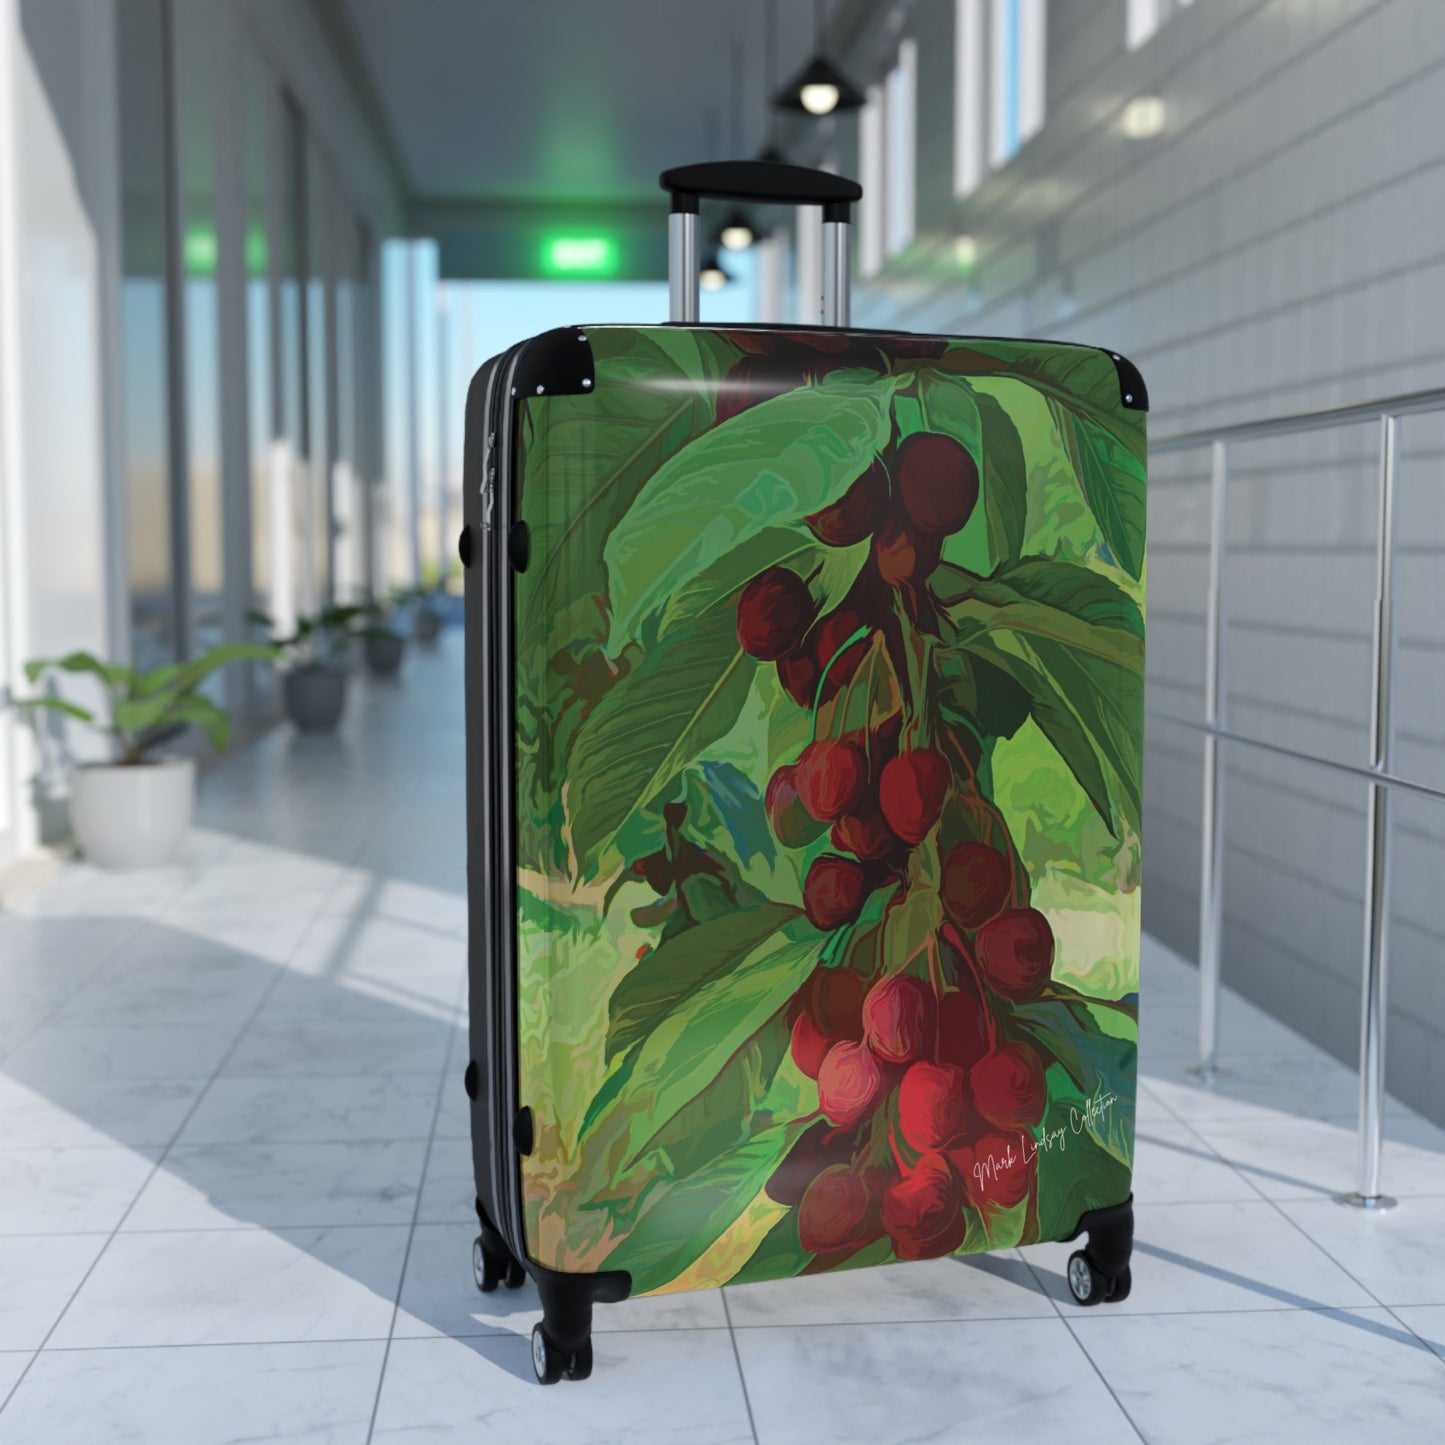 Sweet Cherries Special Custom Art Luggage